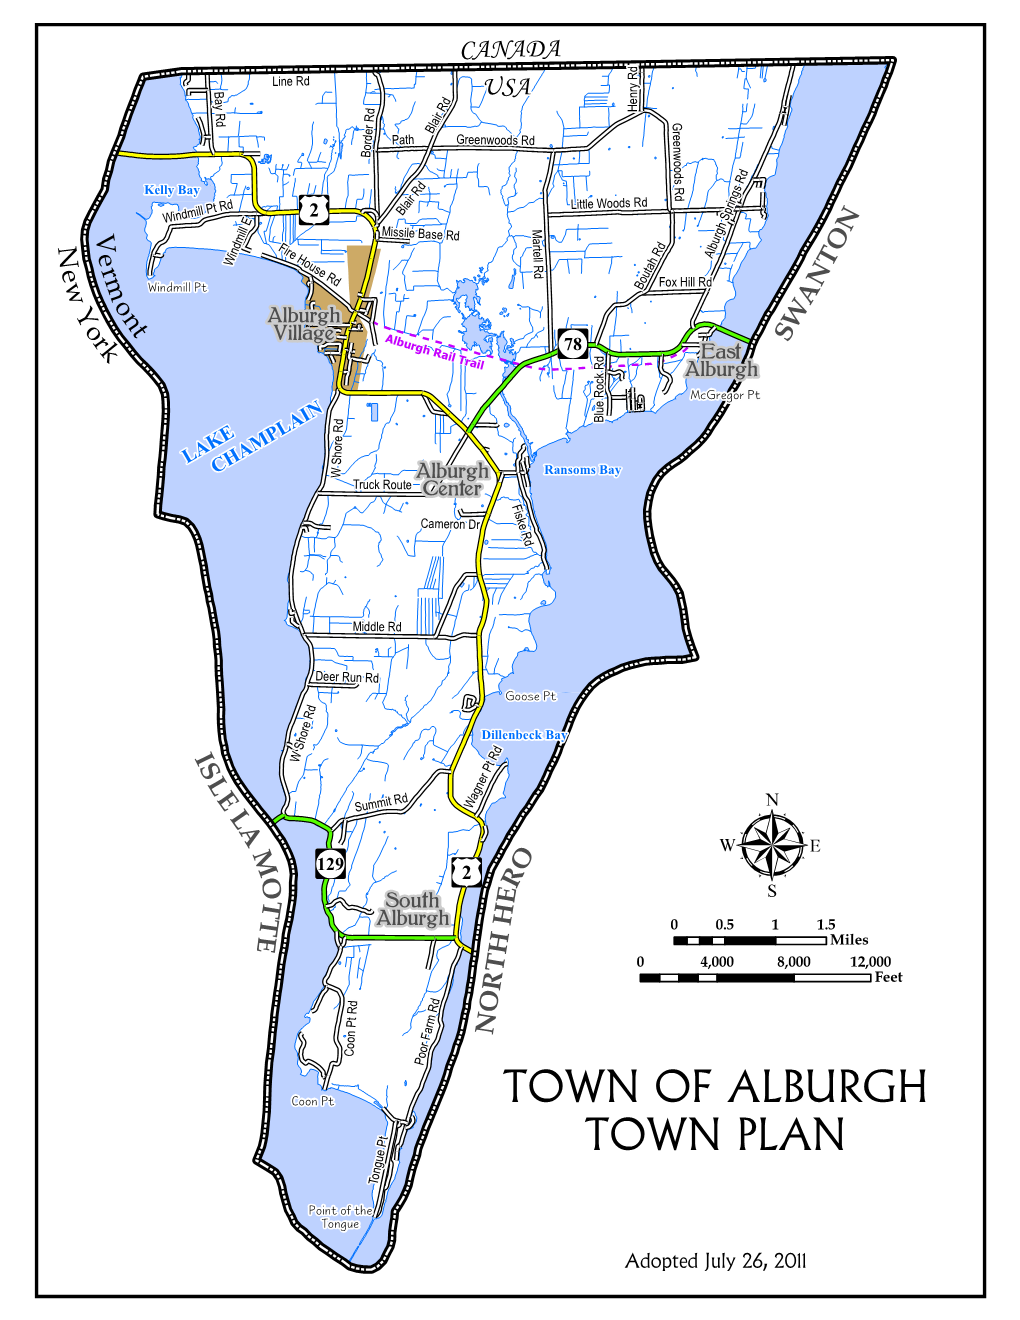 Town of Alburgh Town Plan